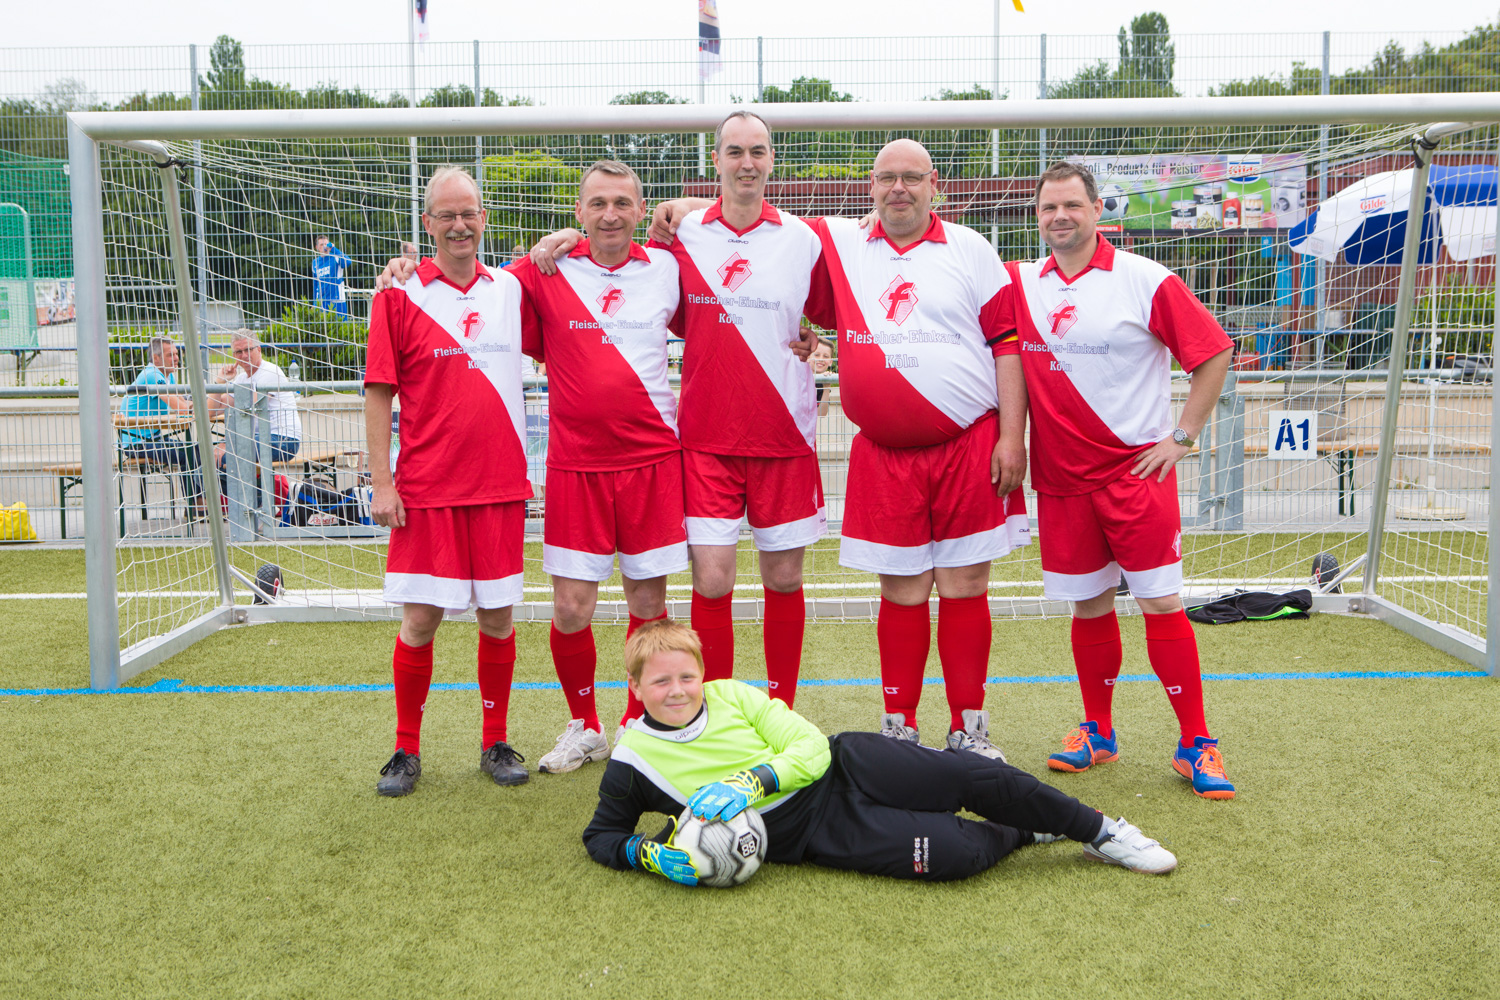 Mannschaft des Fleischer-Einkaufs Köln bei der Teilnahme am Gilde Fußball-Cup 2016